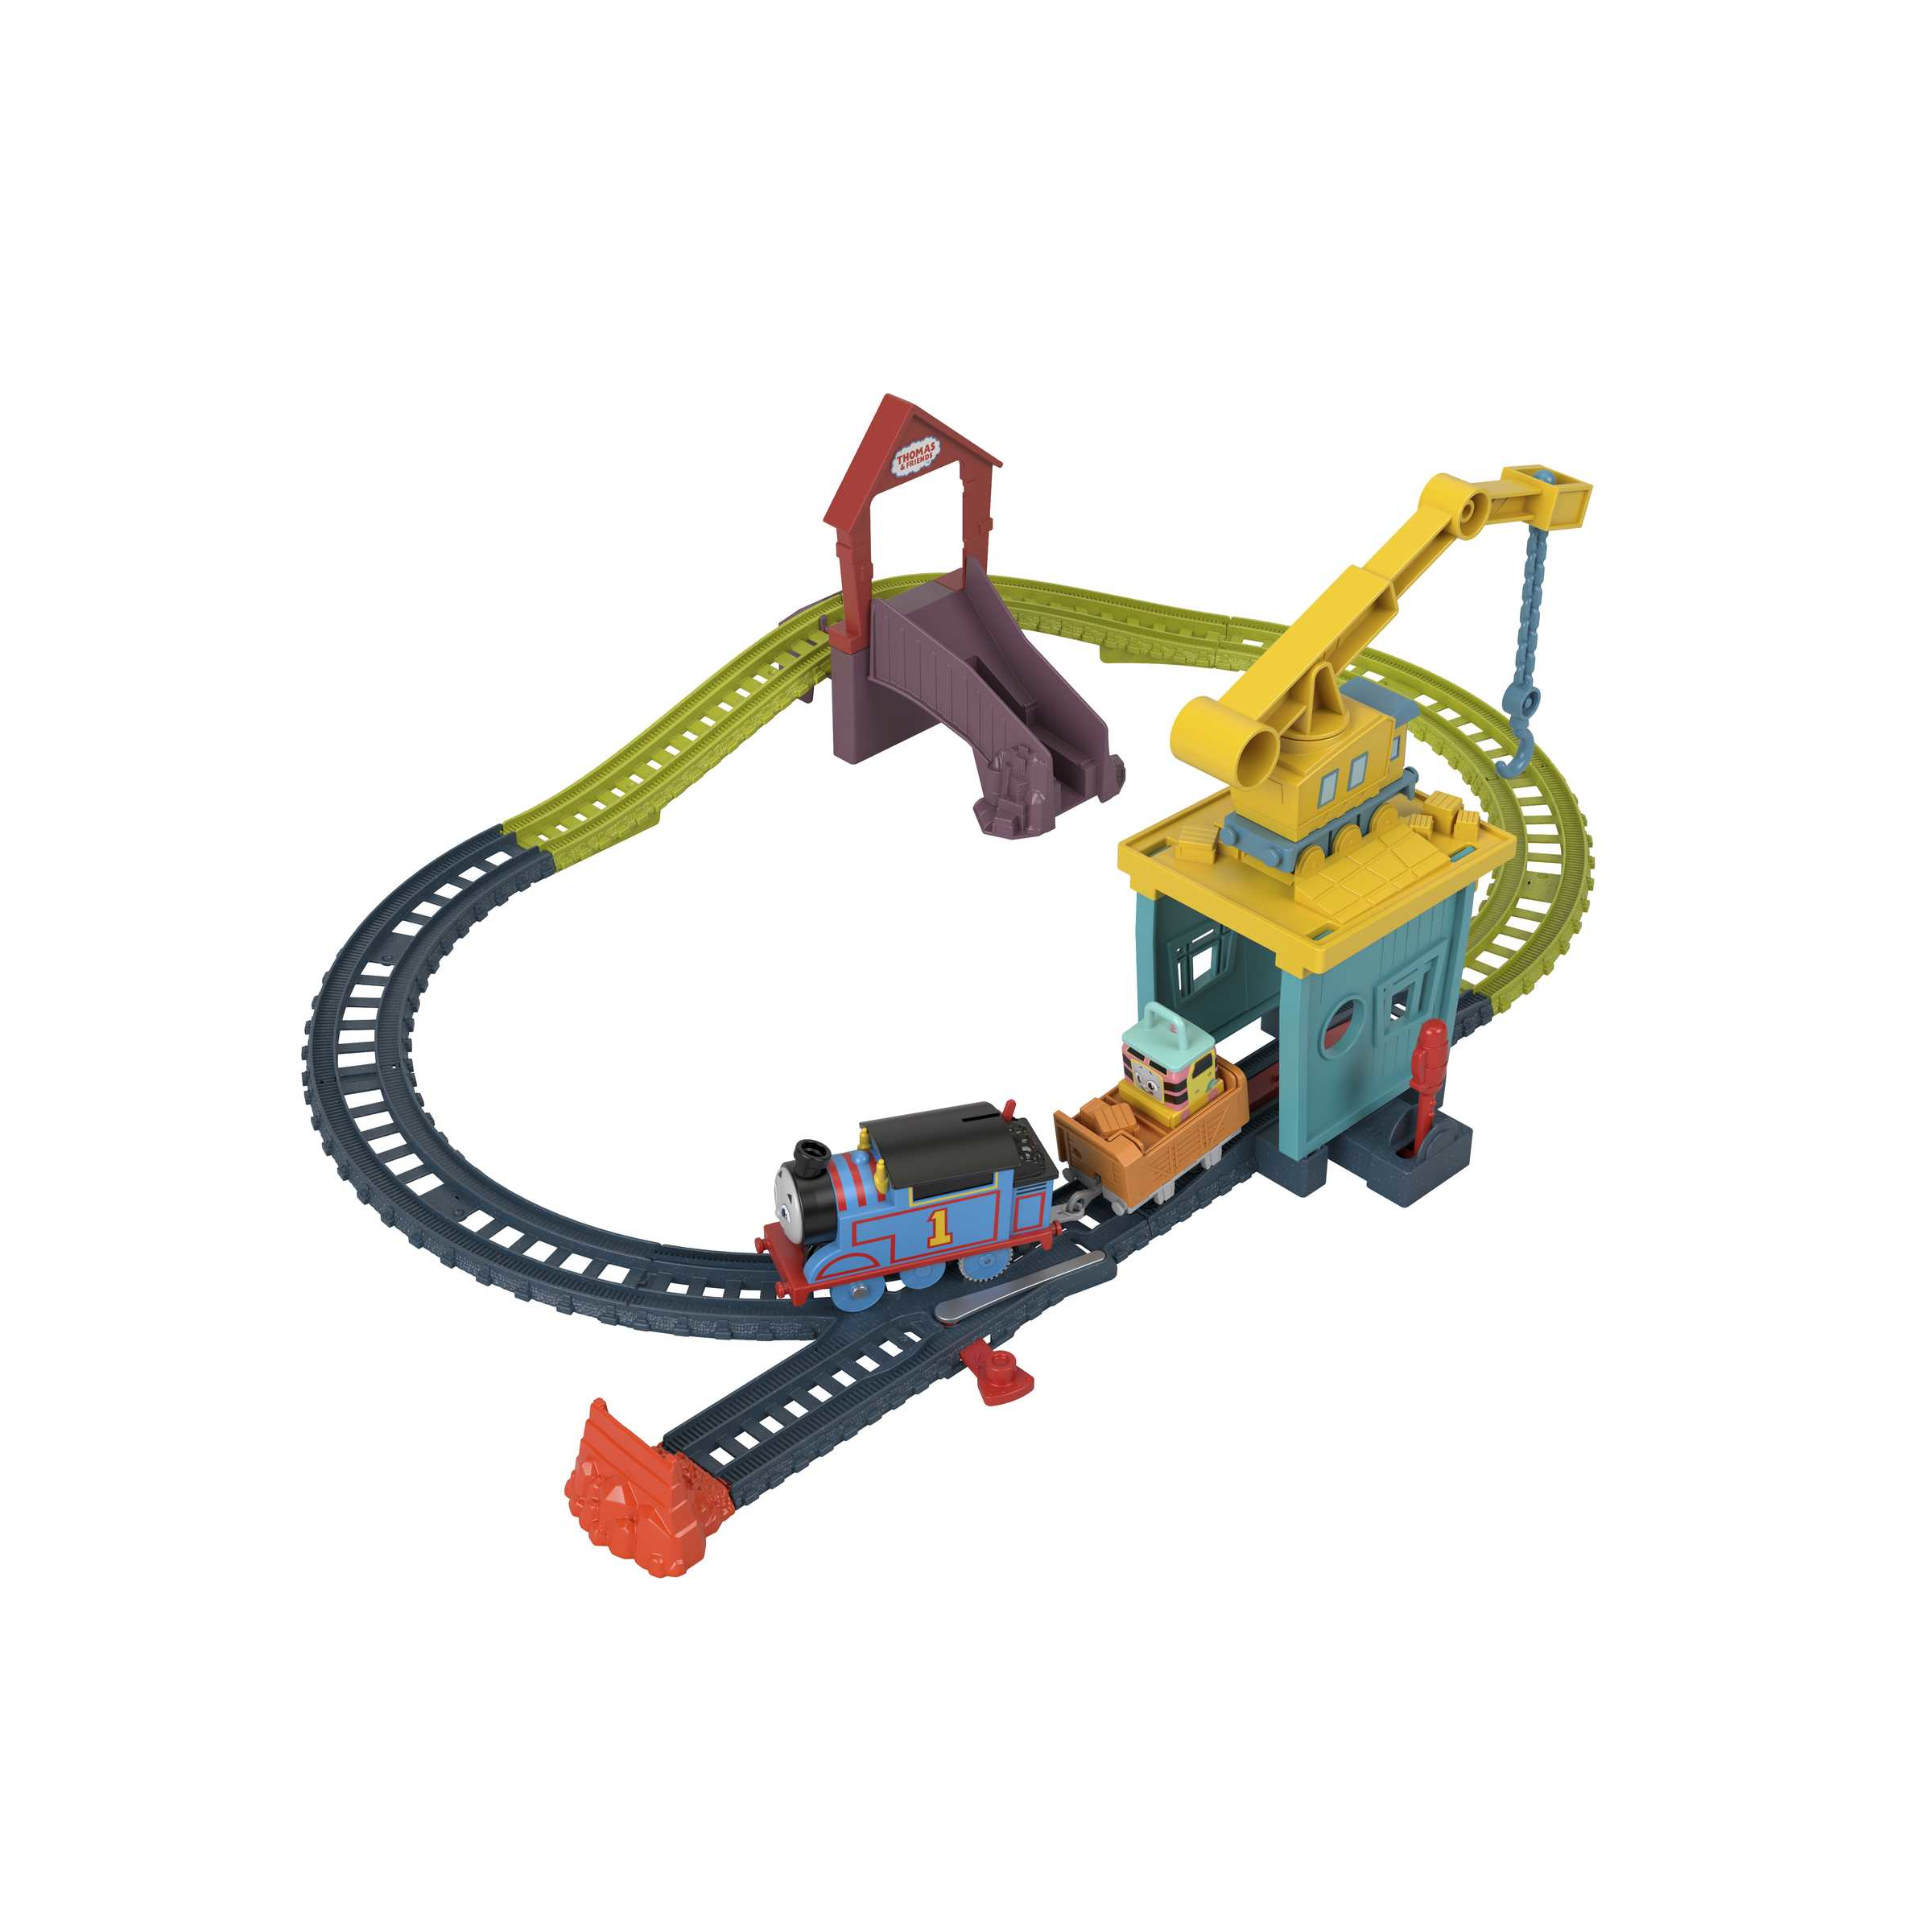 Il trenino thomas - carica e scarica sandy, playset con trenini e pista, include thomas la locomotiva motorizzata, giocattolo per bambini 3+ anni, hdy58 - THOMAS & FRIENDS